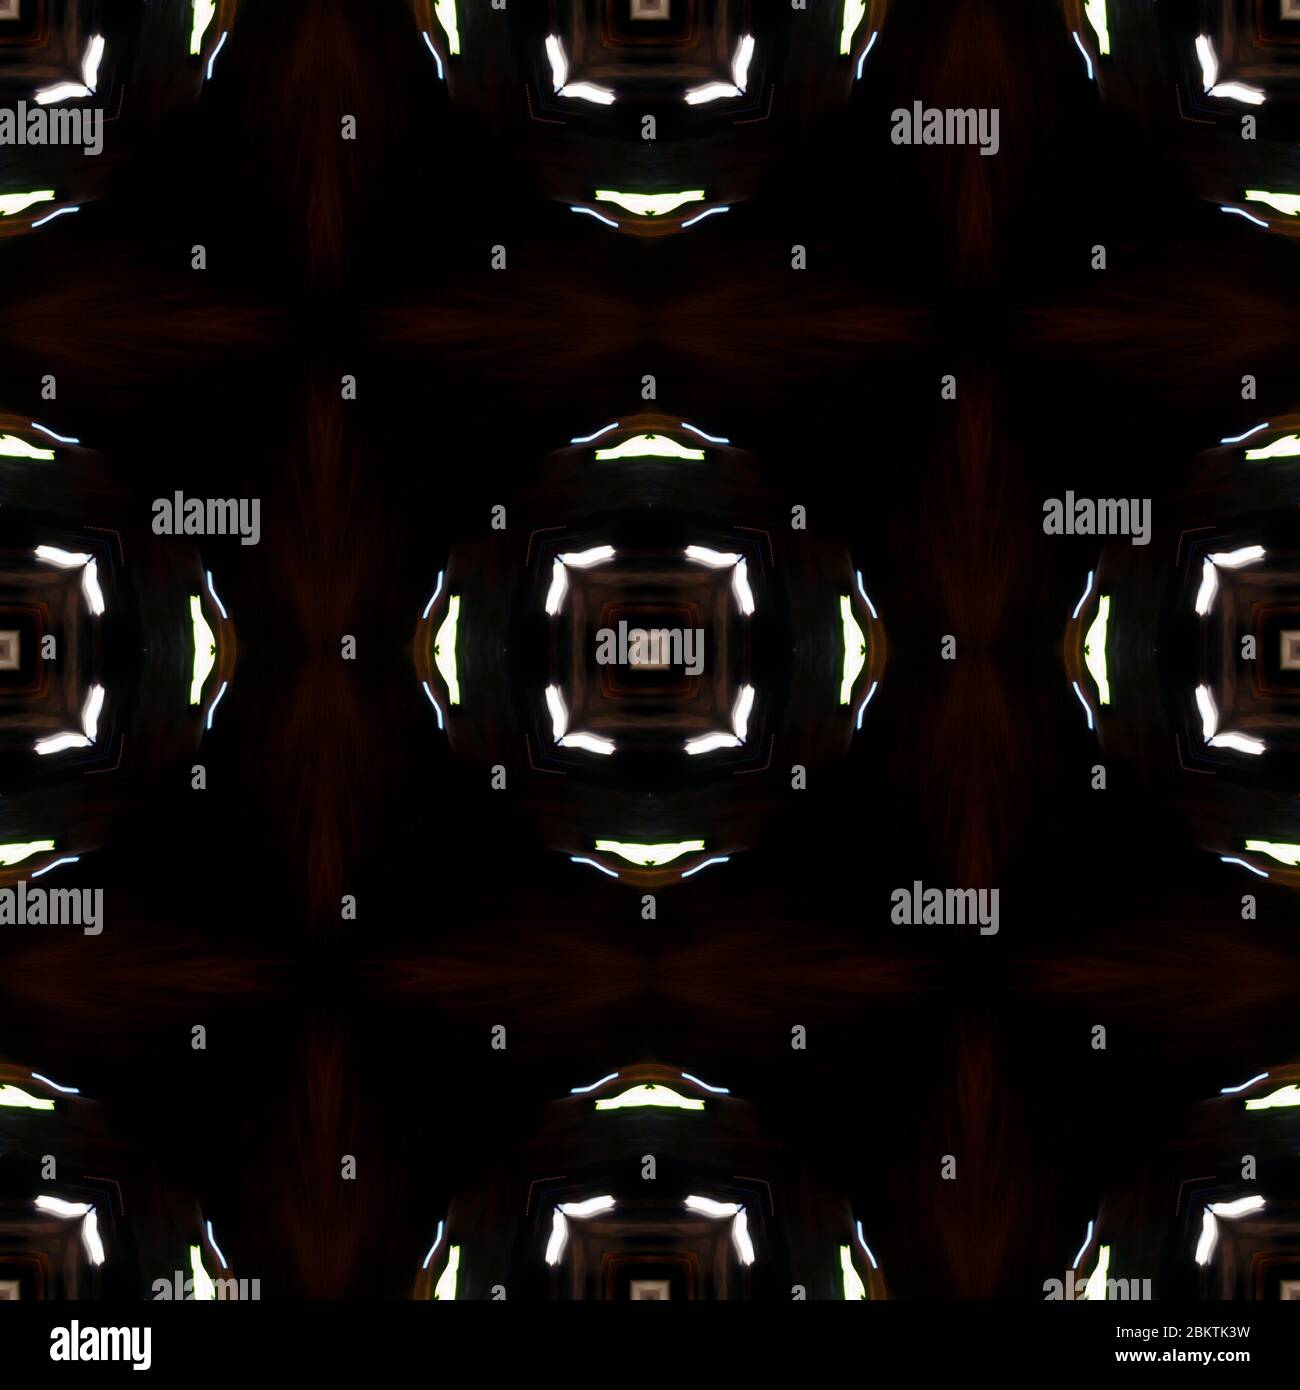 Kaleidoskop, ein nahtloses abstraktes geometrisches Muster aus dem Foto - die Lichter der Nachtstadt. Es ist ein Fokus. Farbige Lichtflecken auf dunklem Hintergrund. Design-Element für Verpackungen, Textilien, Hintergrund für Website oder Blog Stockfoto